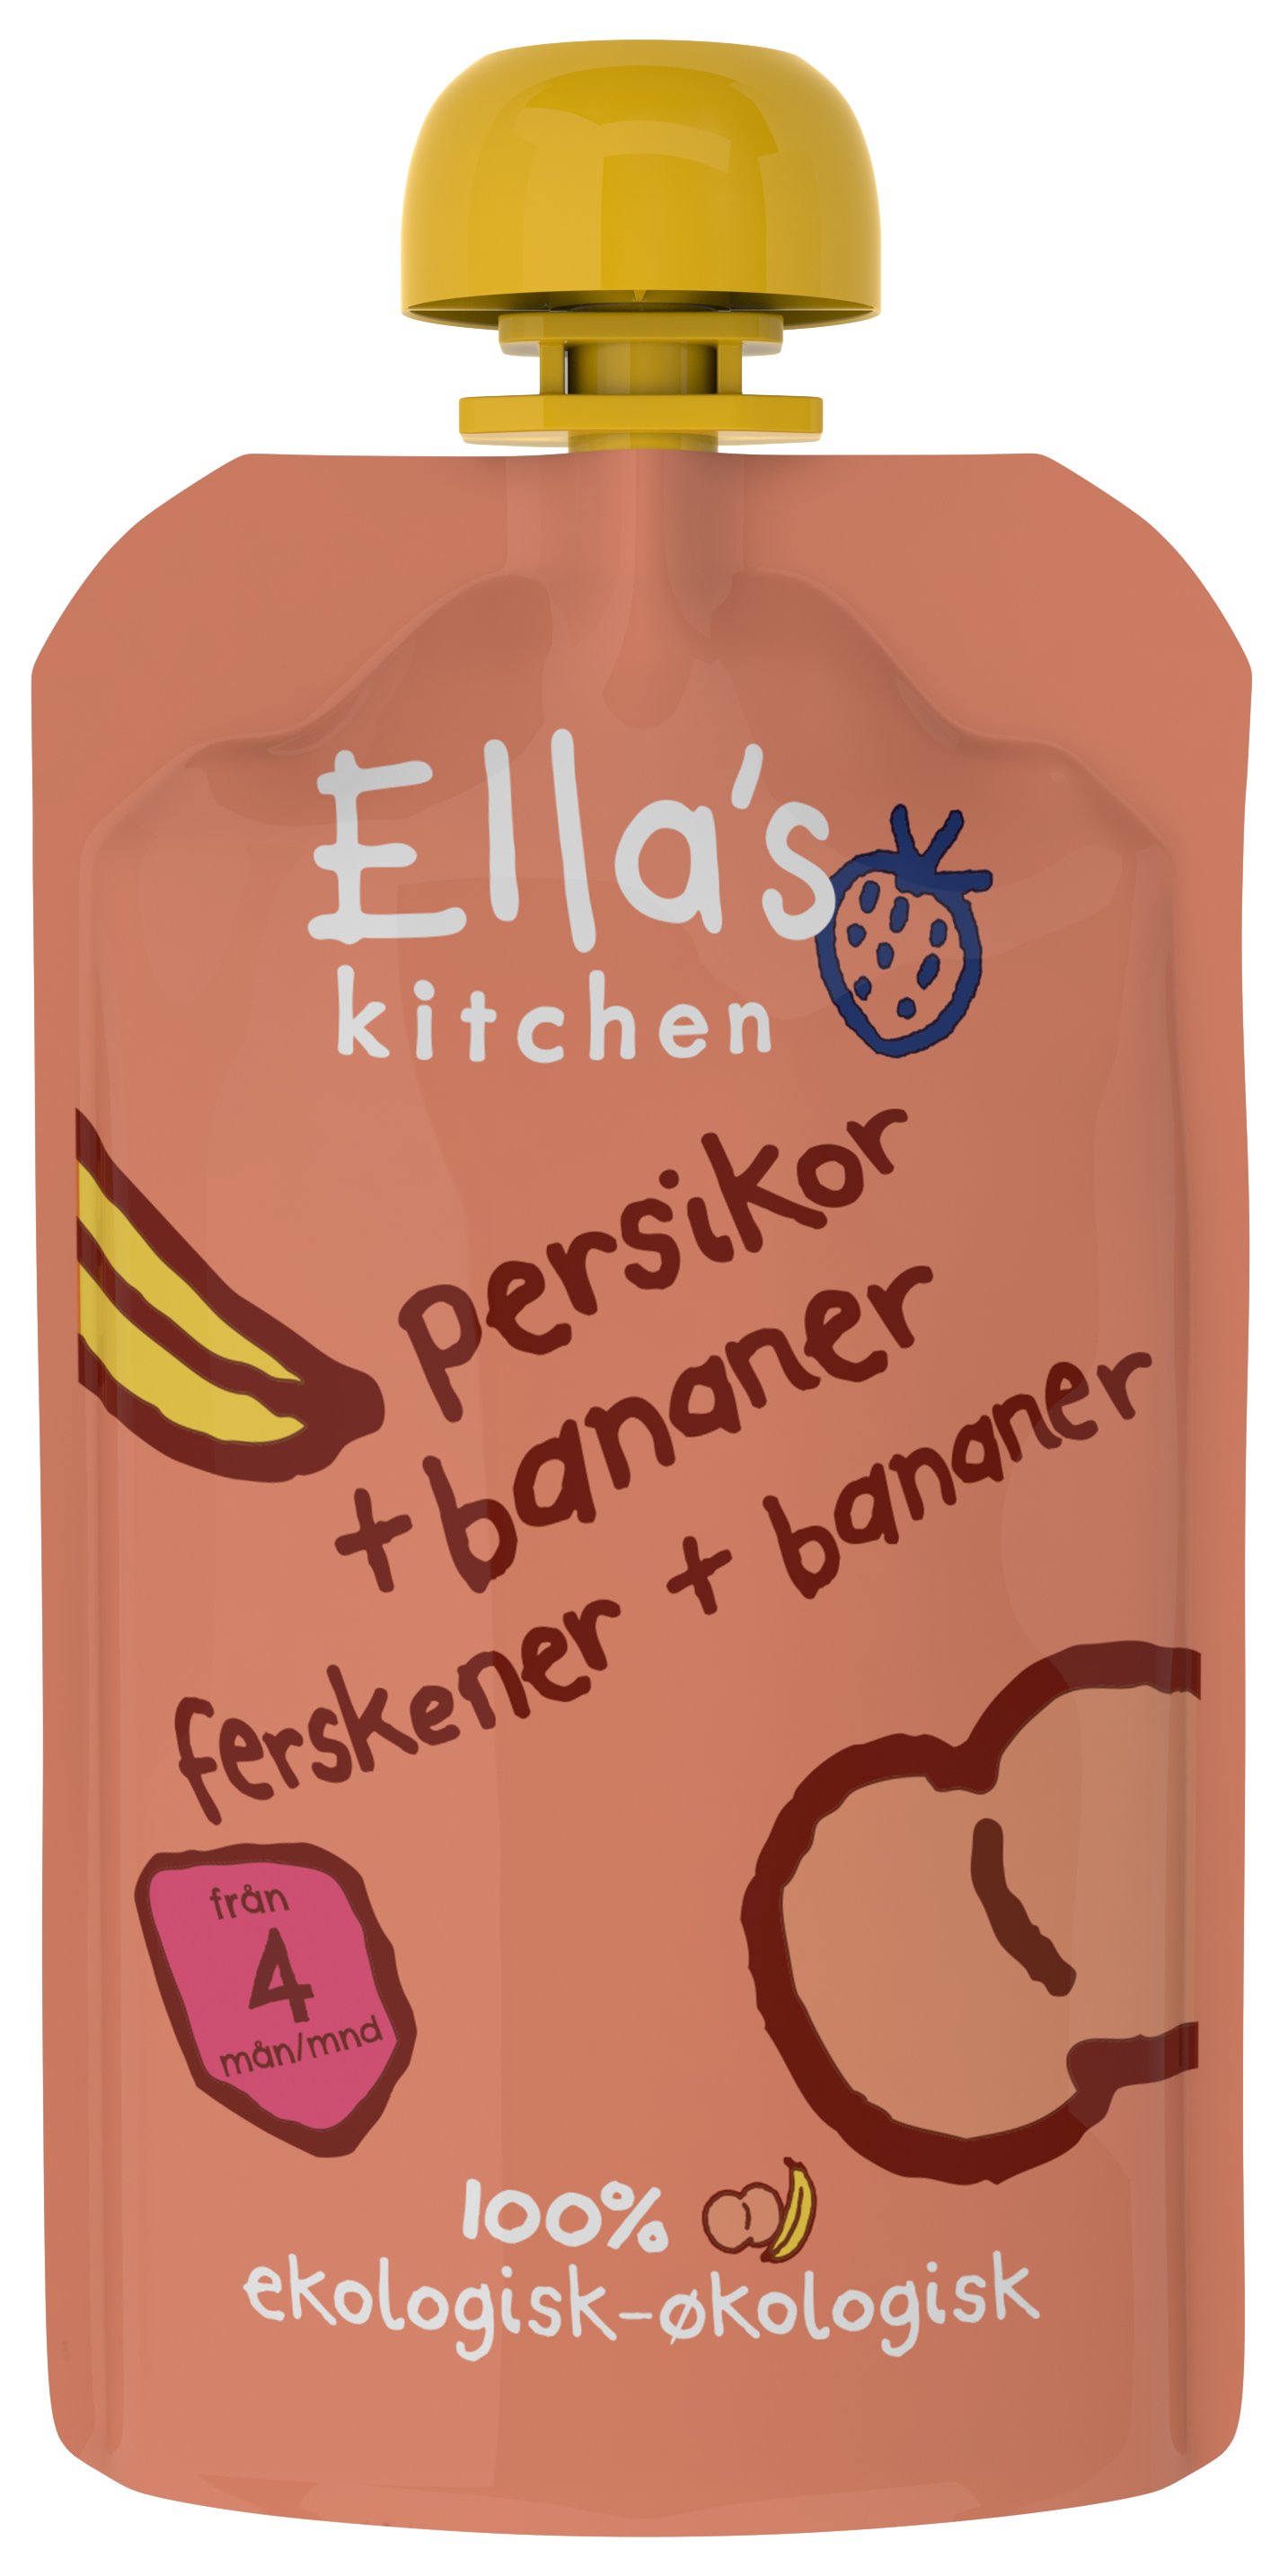 Ella's Kitchen Persika & banan puré 120 g